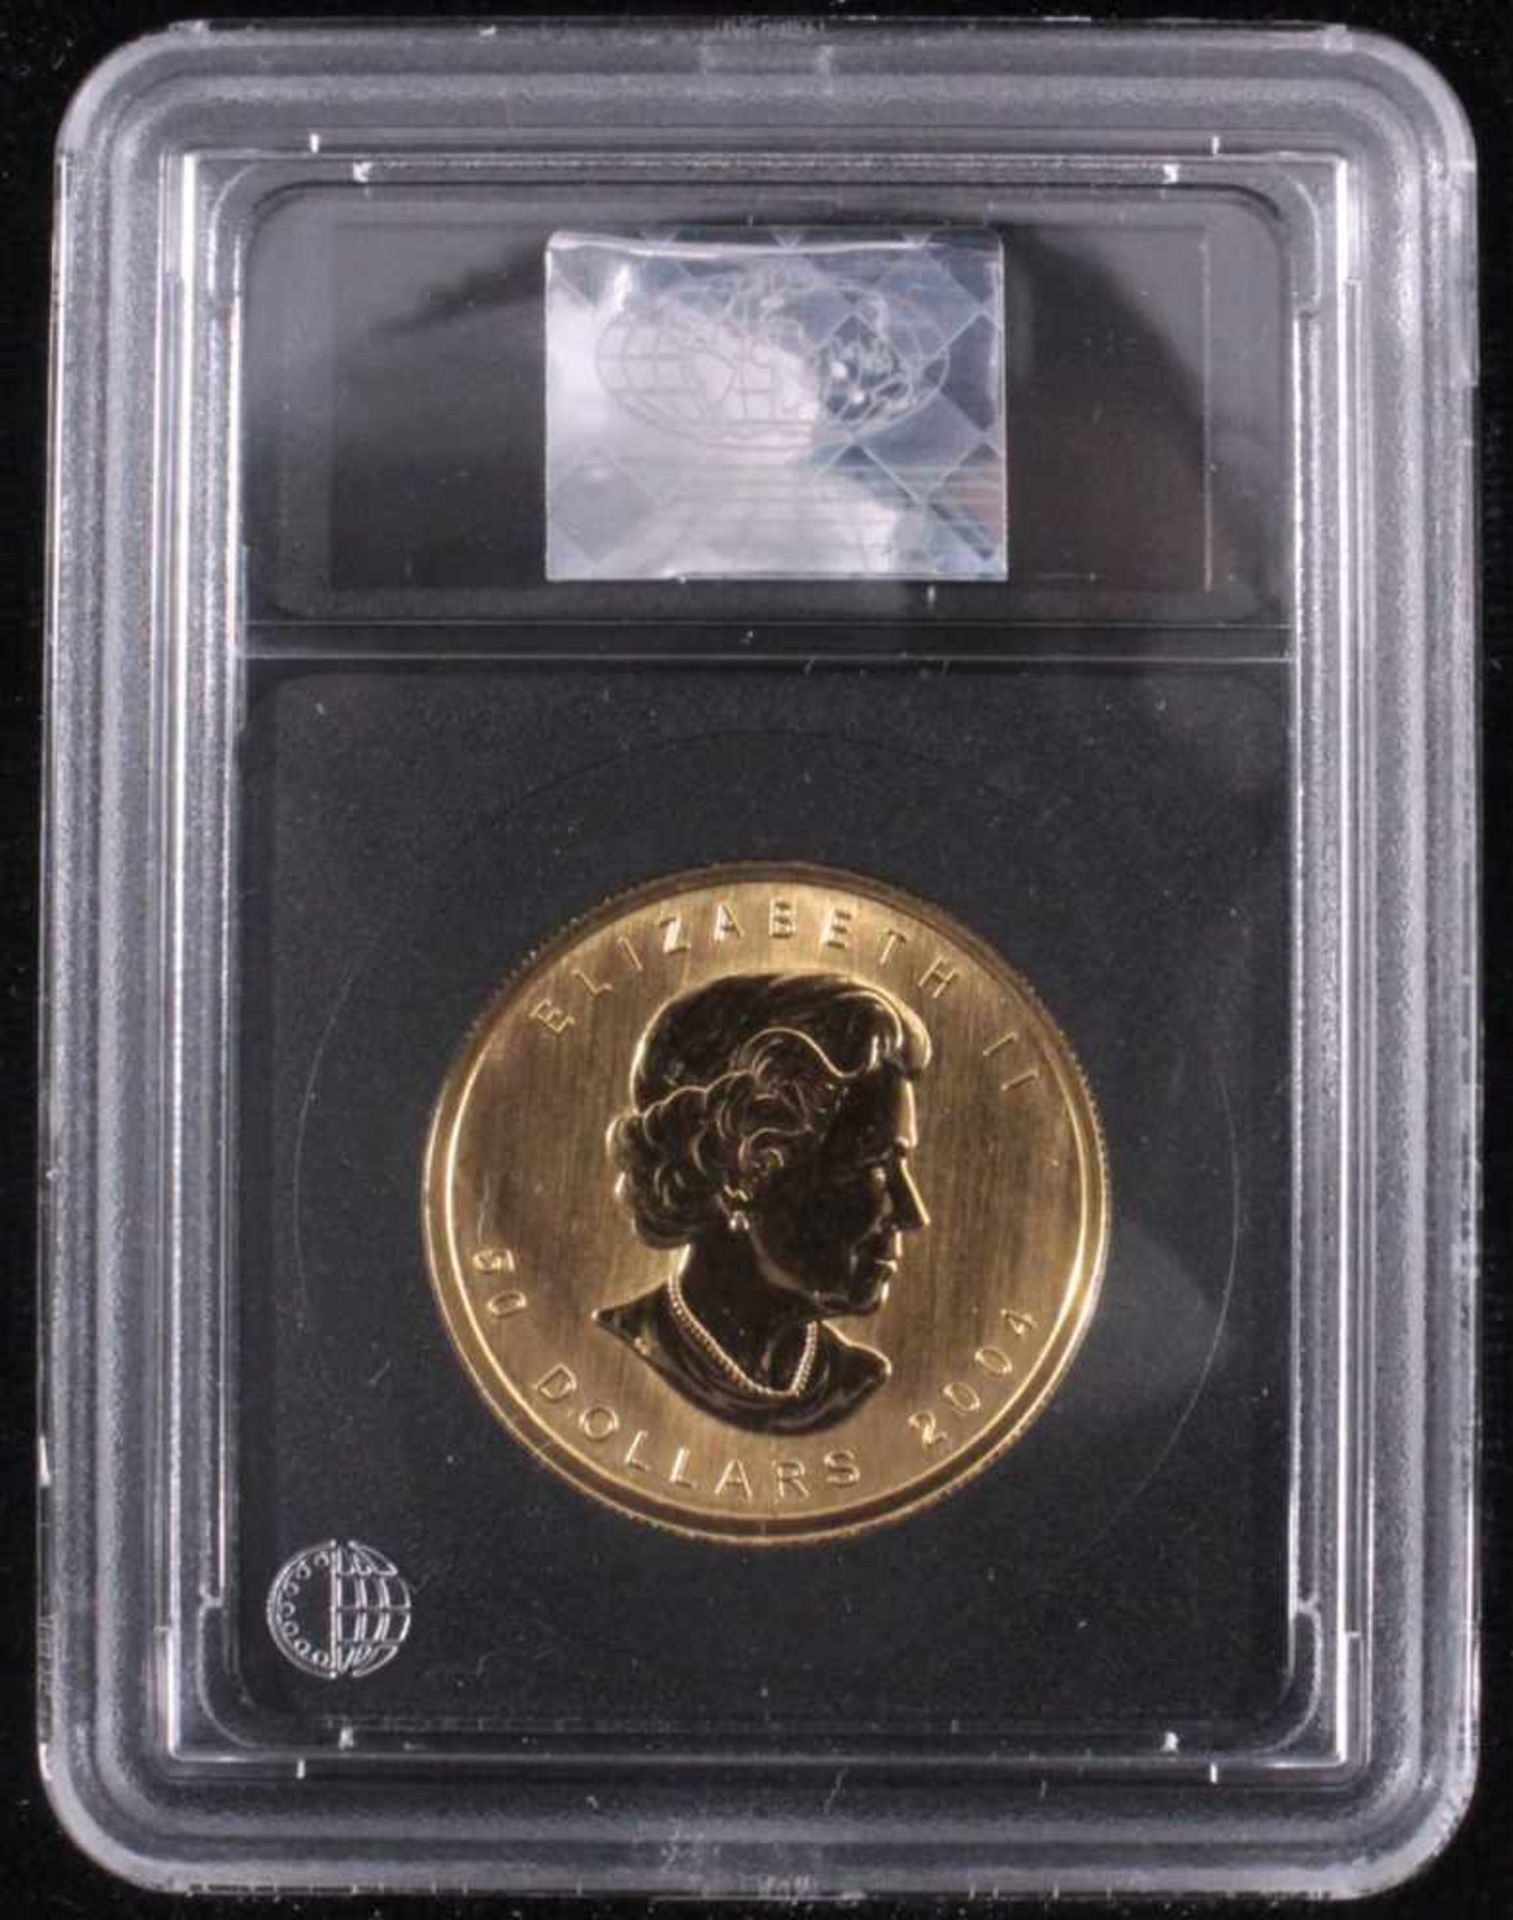 1 oz Maple Leaf Goldmünze50 kanadische Dollar, koloriert und mit einem Diamantenbesetzt. Inklusive